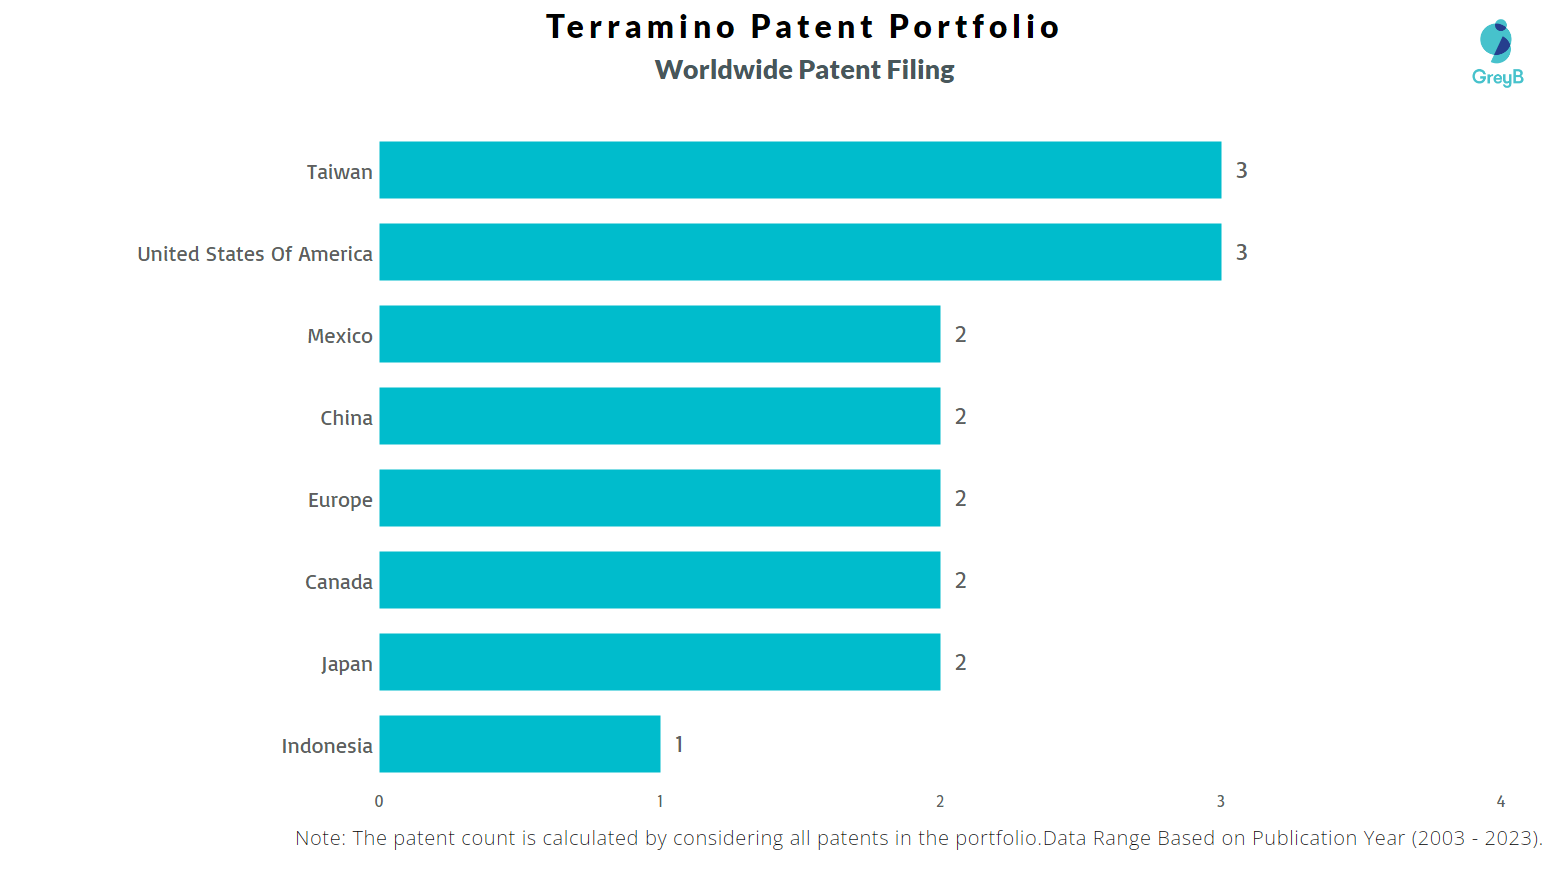 Terramino Worldwide Patent Filing